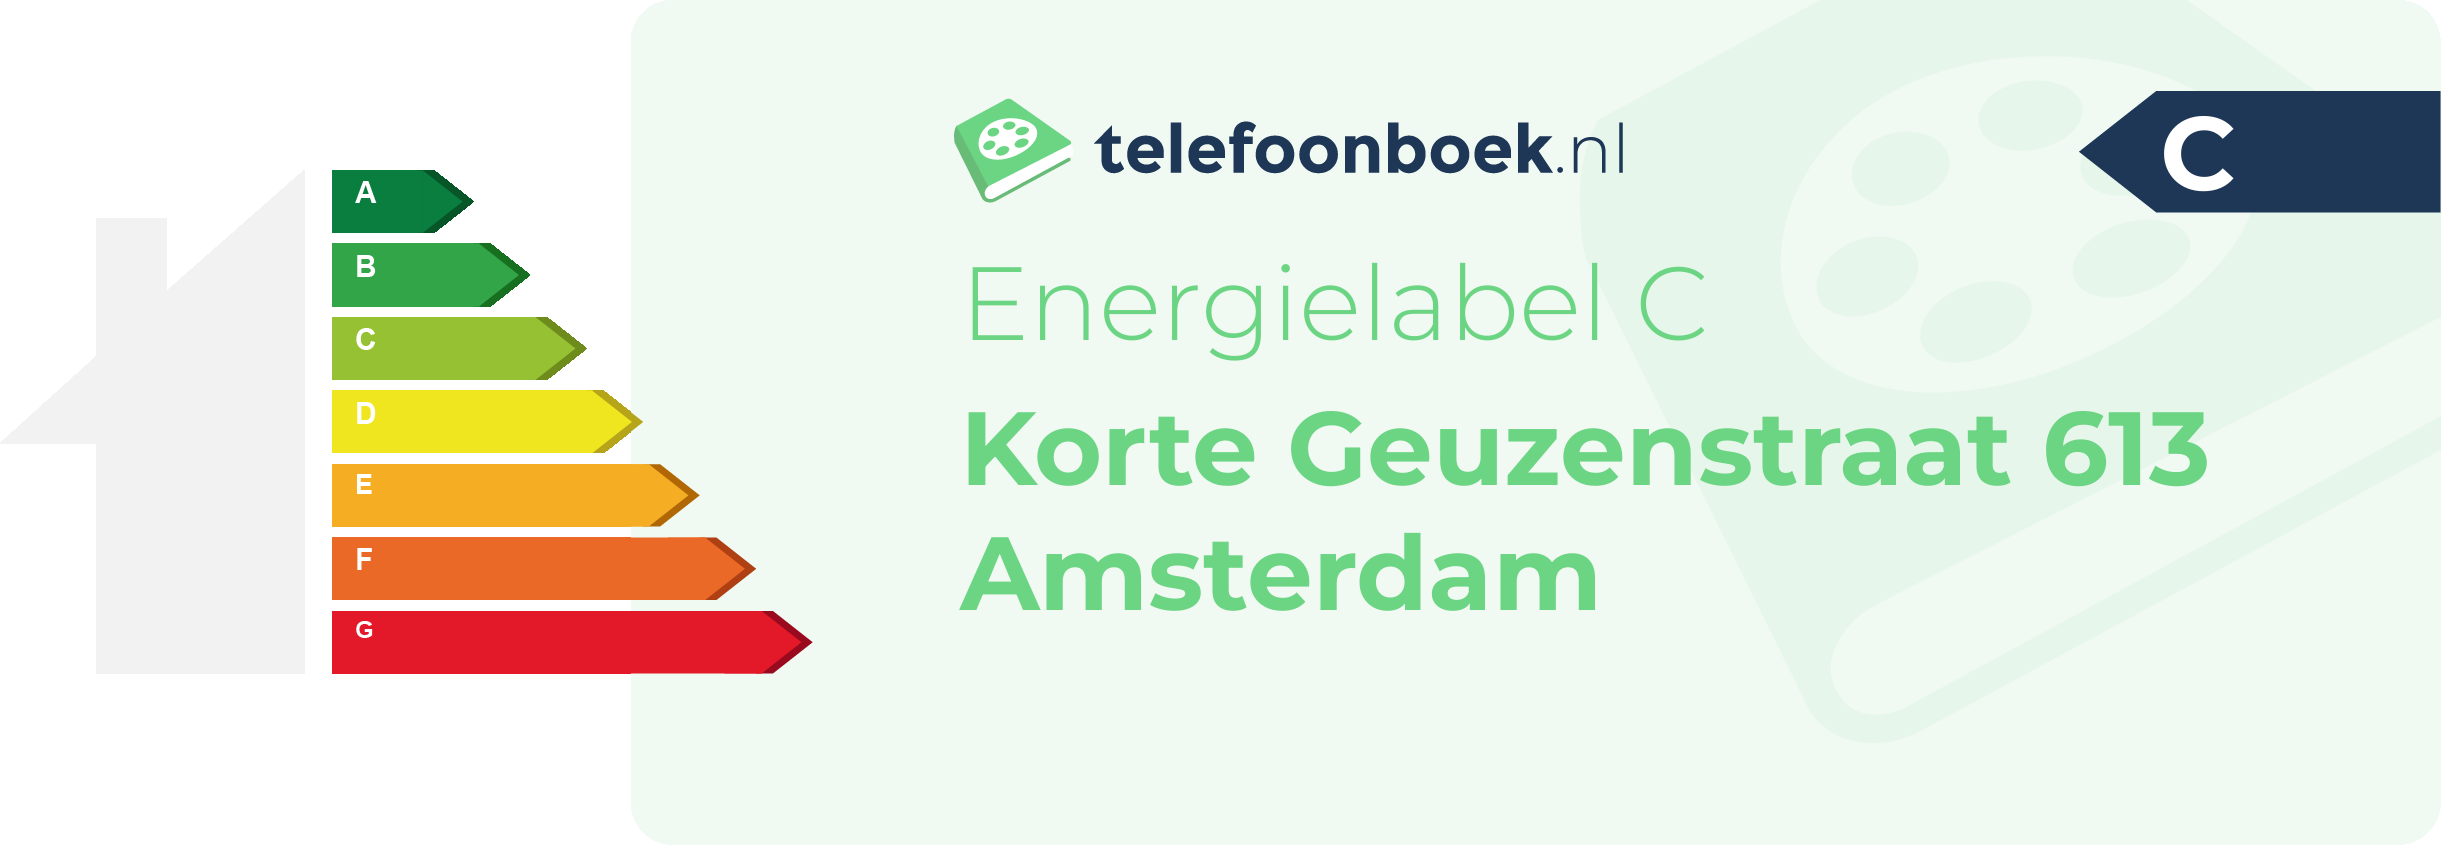 Energielabel Korte Geuzenstraat 613 Amsterdam